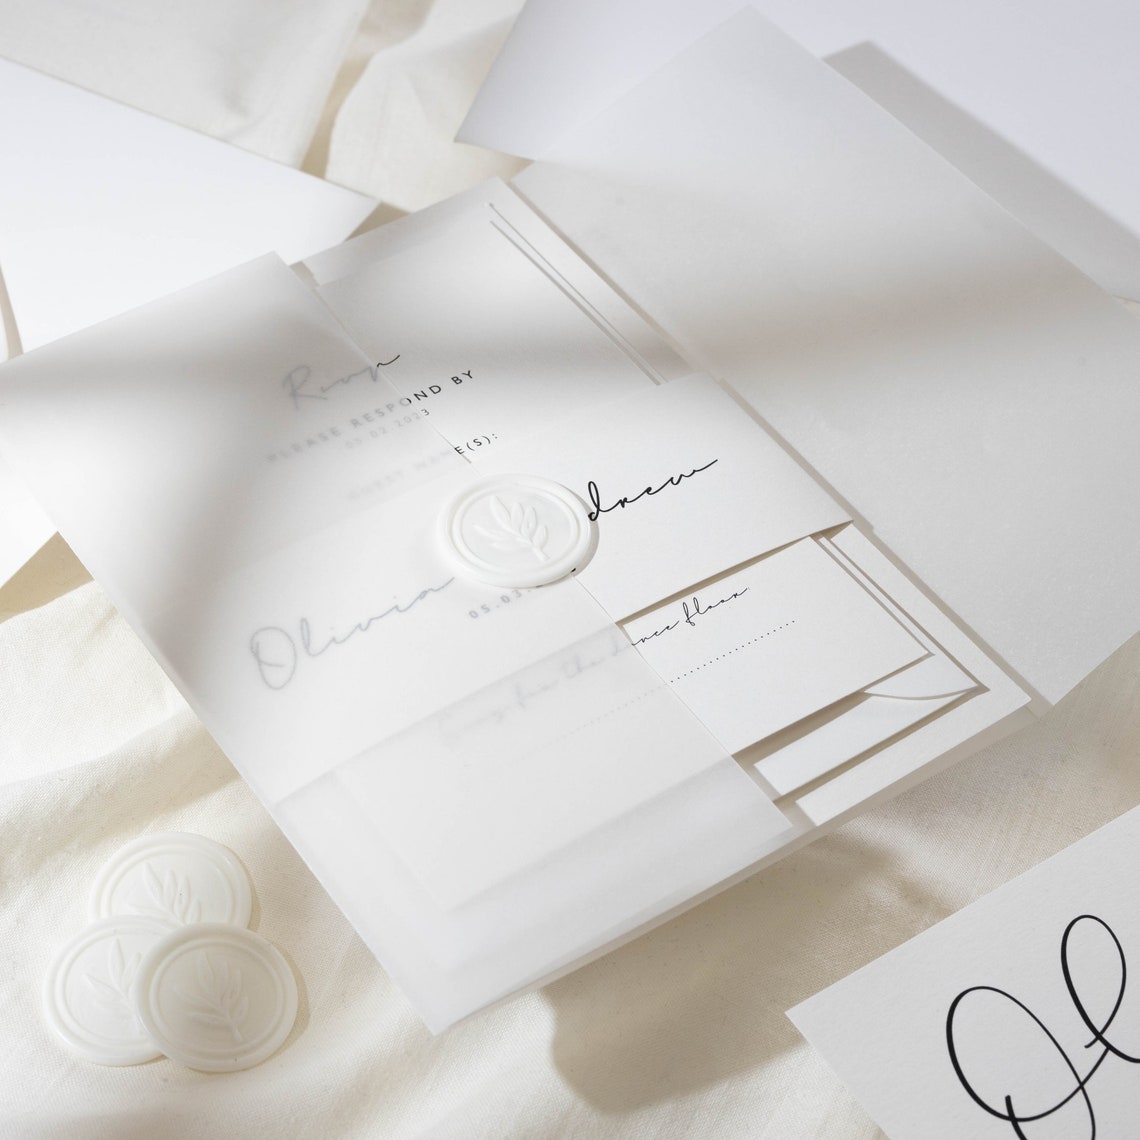 Minimal white vellum wedding invitation by Twist Stationery on Etsy UK